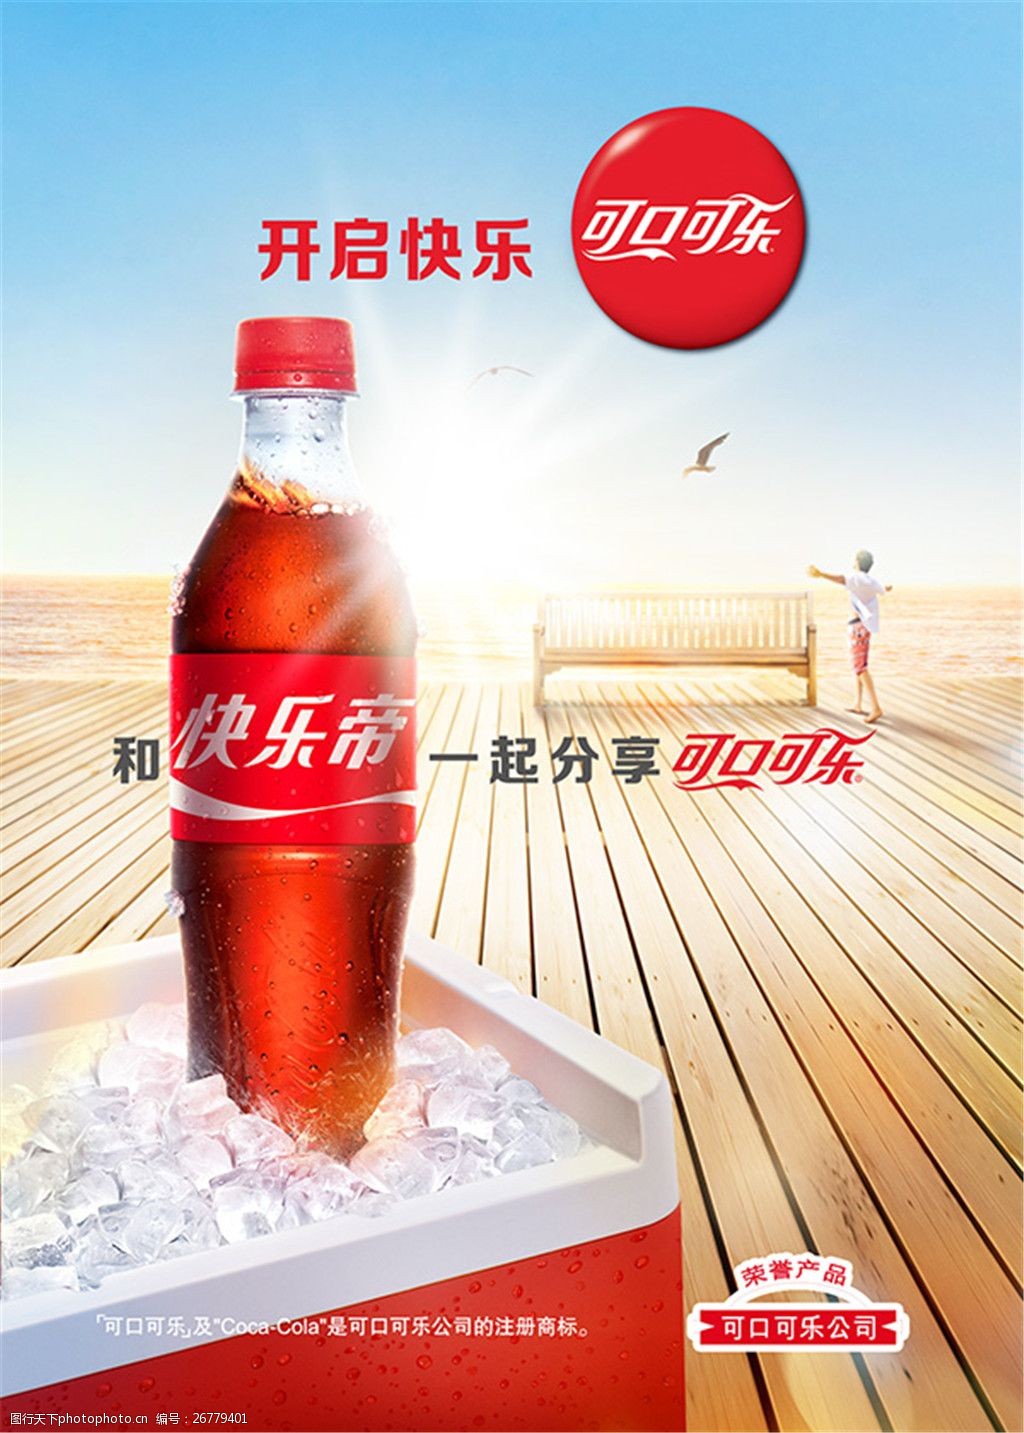 关键词:可口可乐饮料海报 饮料 可口可乐 快乐 海报 促销设计 psd